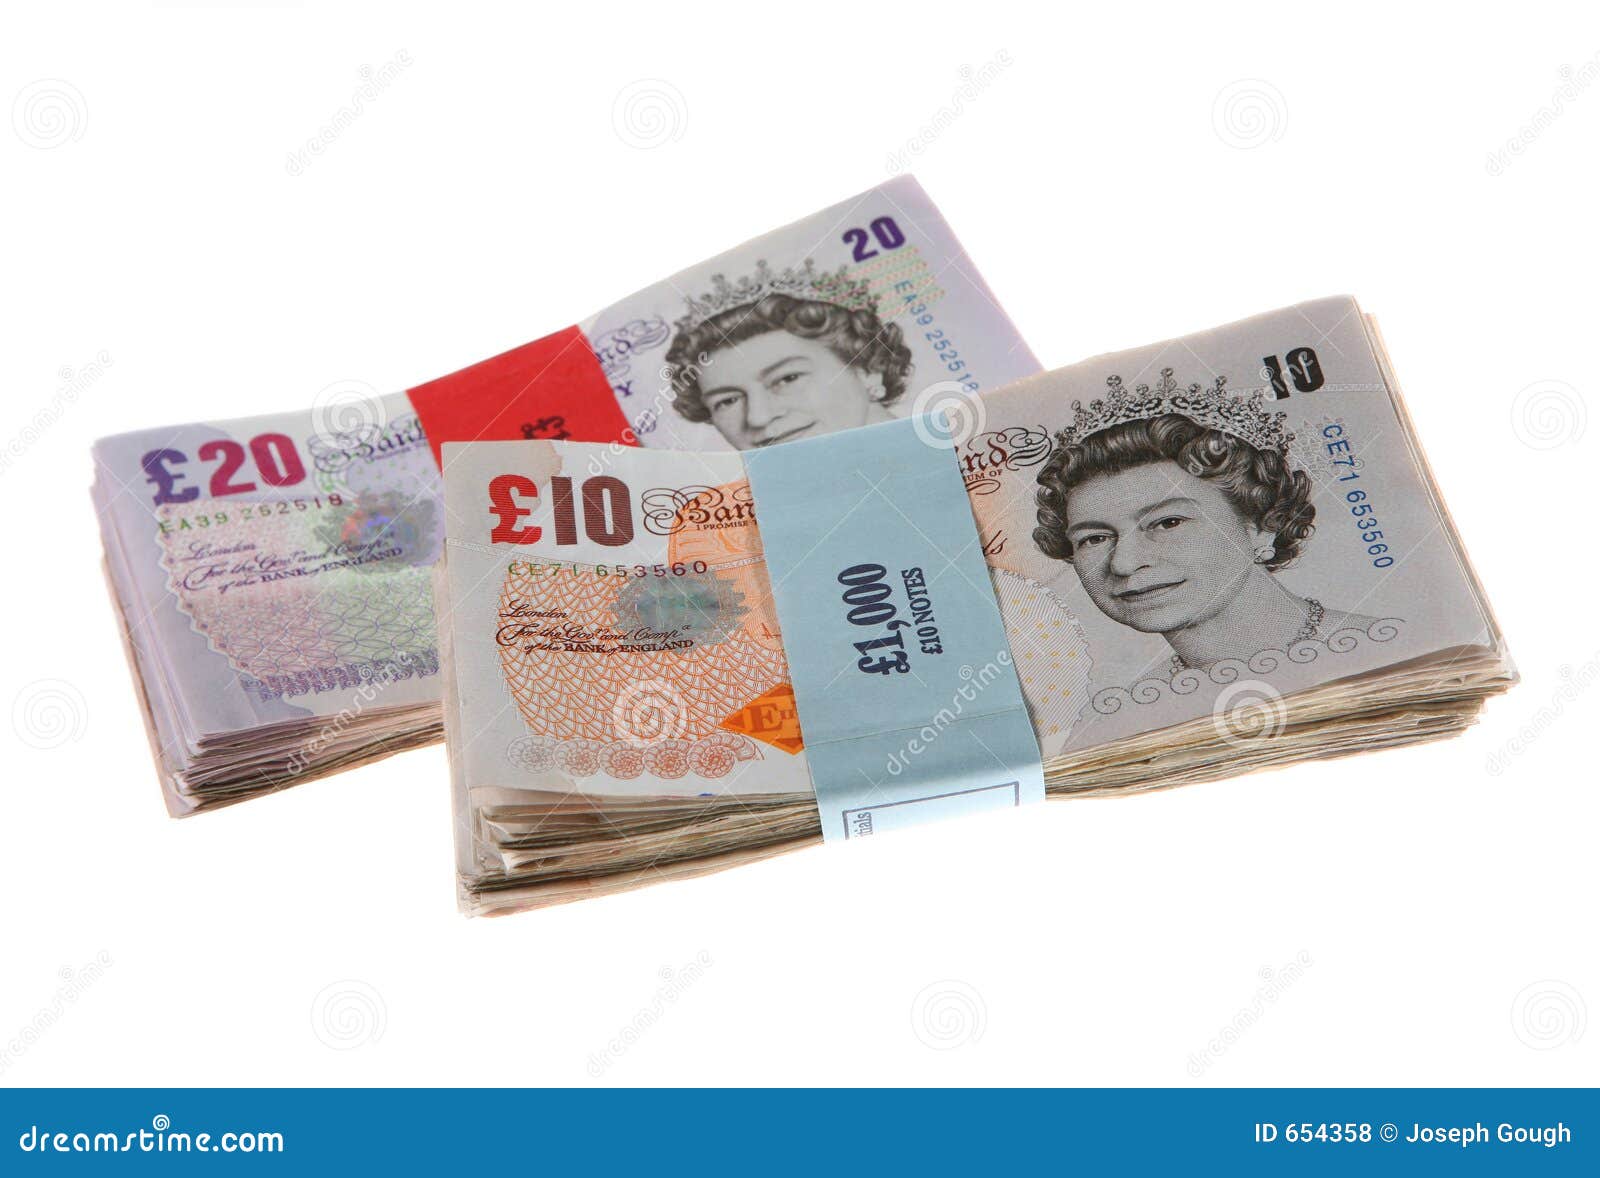 free clipart uk money - photo #35